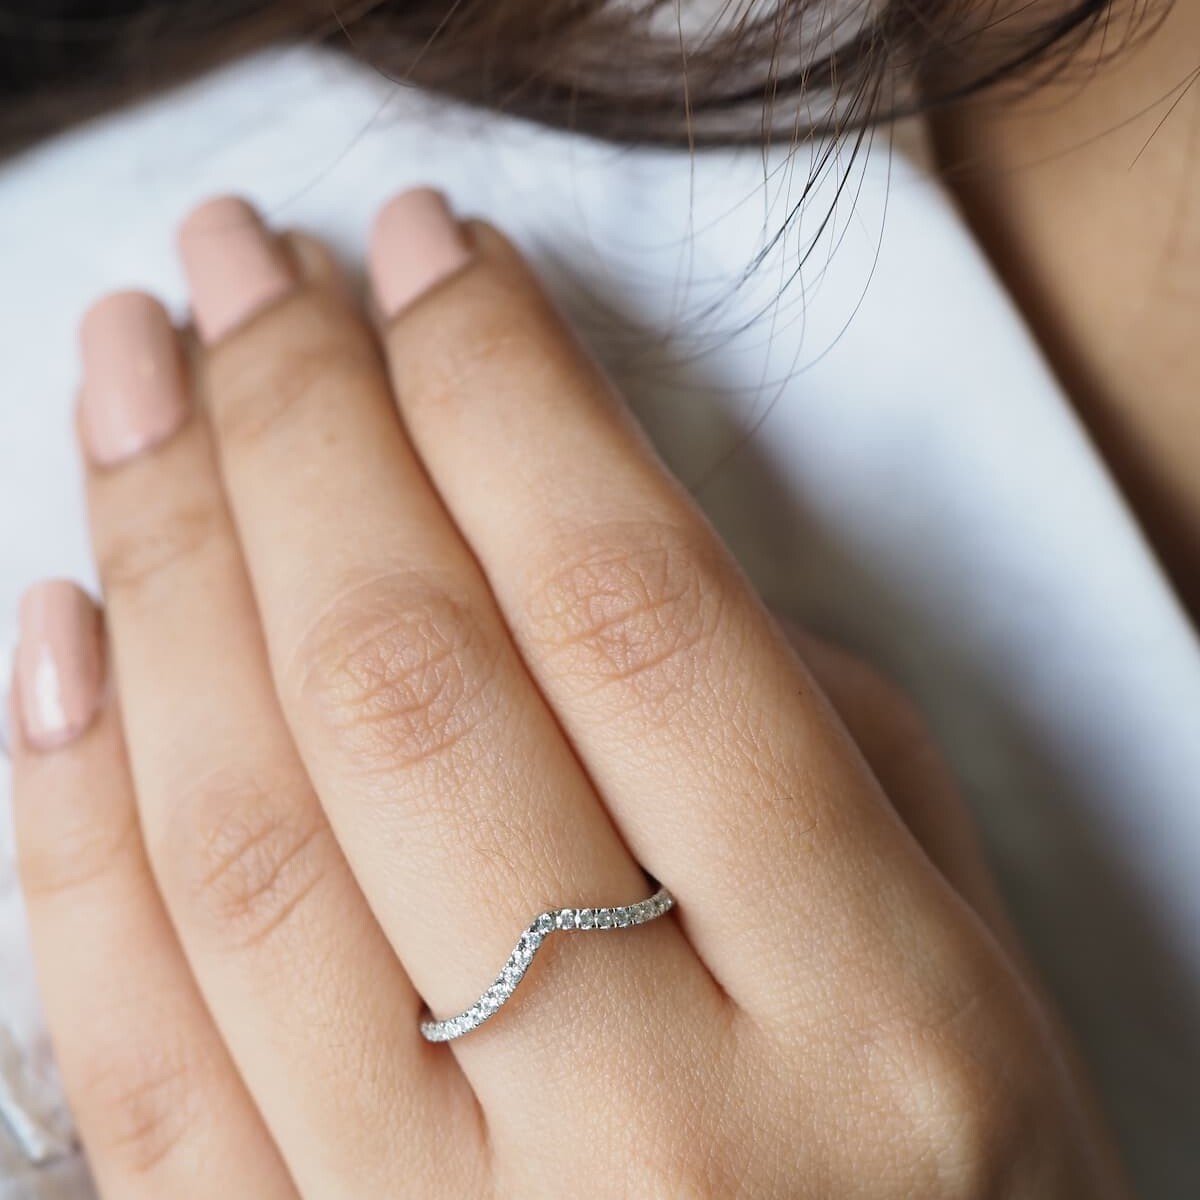 Pandora Rose Gold Shimmering Wish Ring for Women